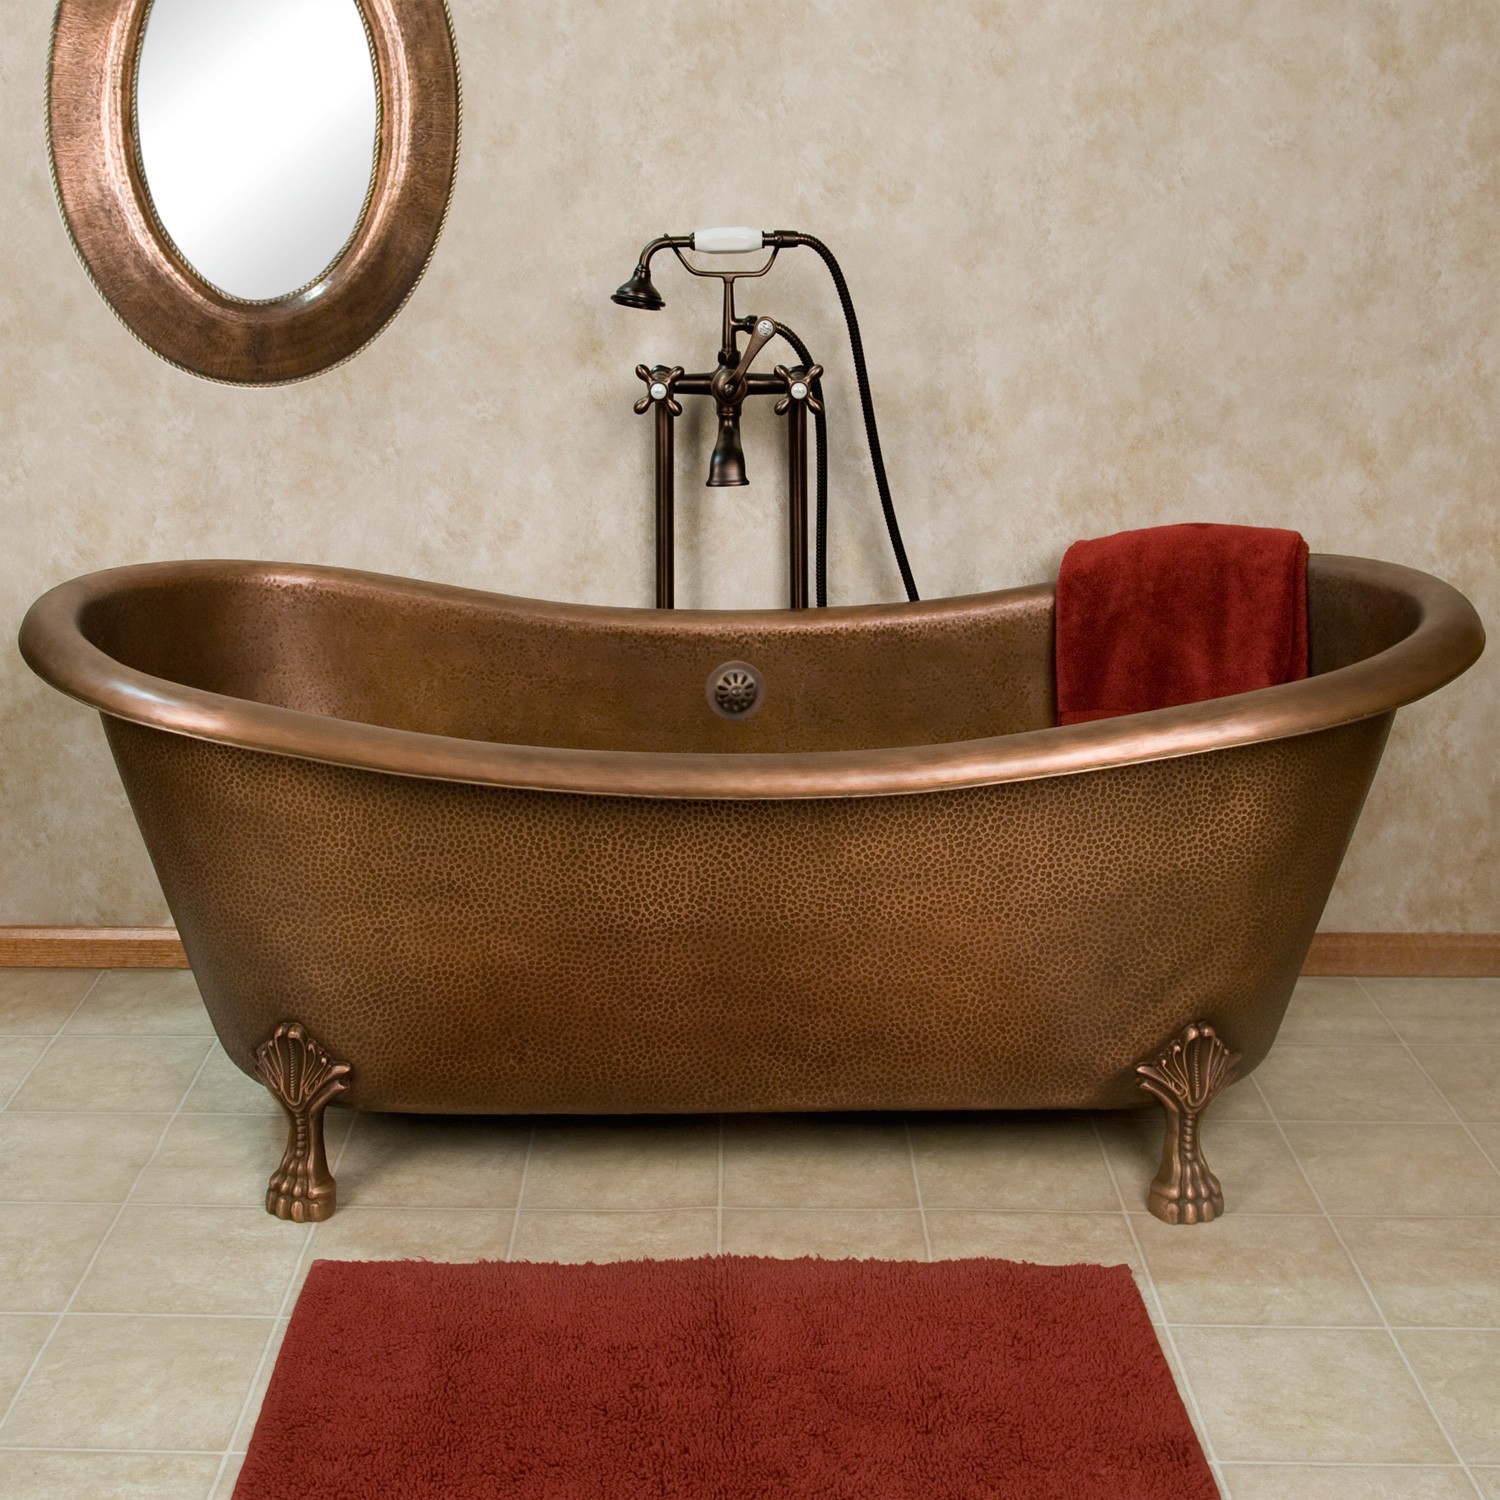 Bồn tắm  này có bóng mờ của đồng, vì thế nó là một món đồ tuyệt vời cho một phòng tắm với sự rung cảm huyền bí, mờ ảo.